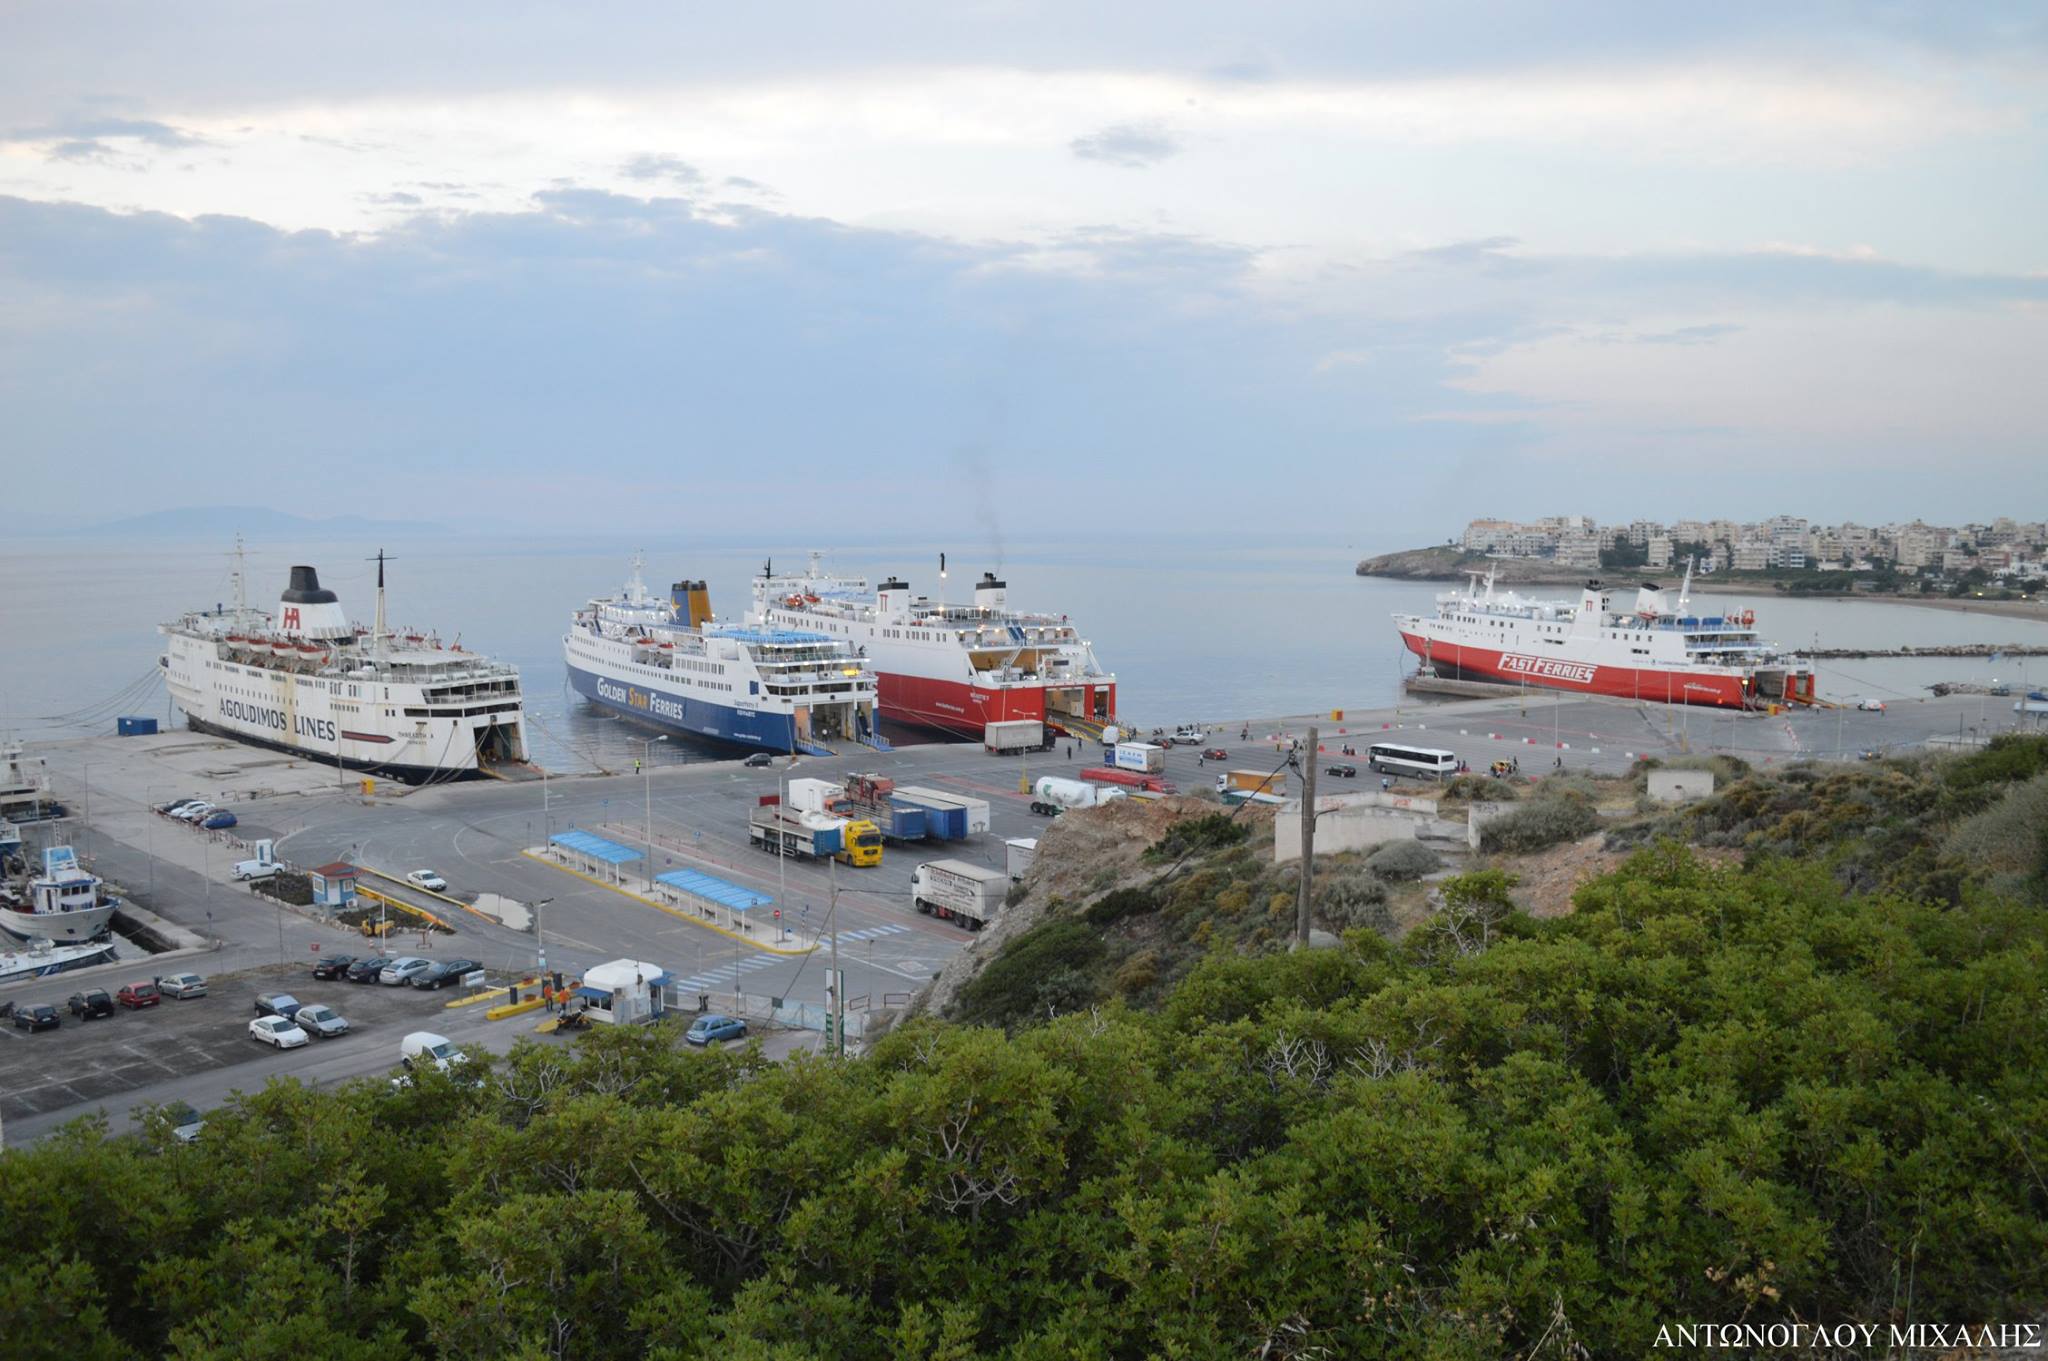 ΕΚΤΑΚΤΟ: Τρόμος (πάλι) στην Ραφήνα – Προσέκρουσε πλοίο στο λιμάνι! (βίντεο)